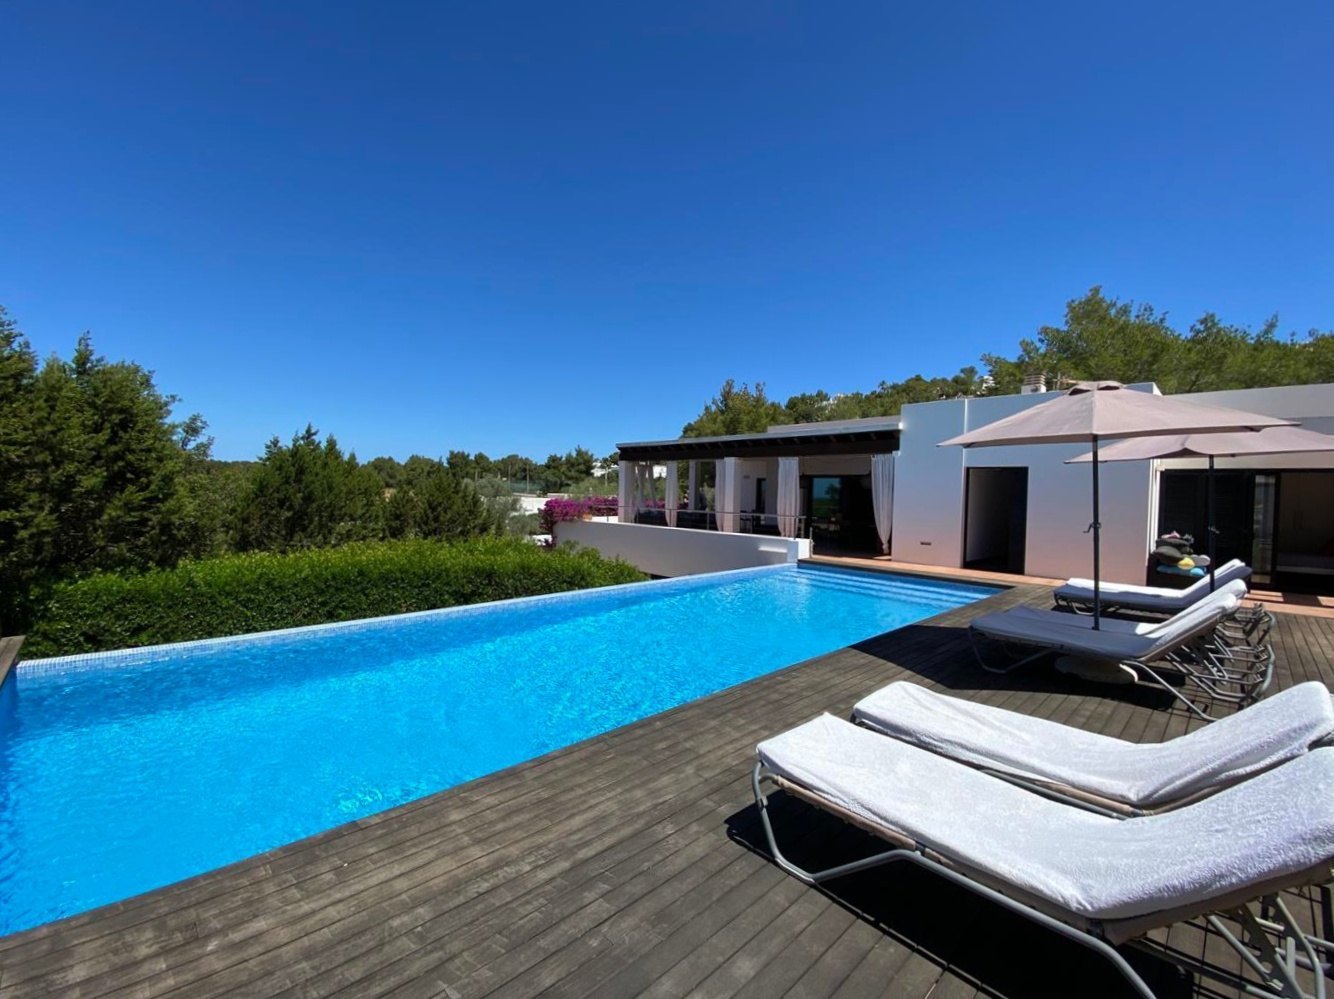 Villa in de buurt van de beroemde Cala Salada met een fantastisch uitzicht